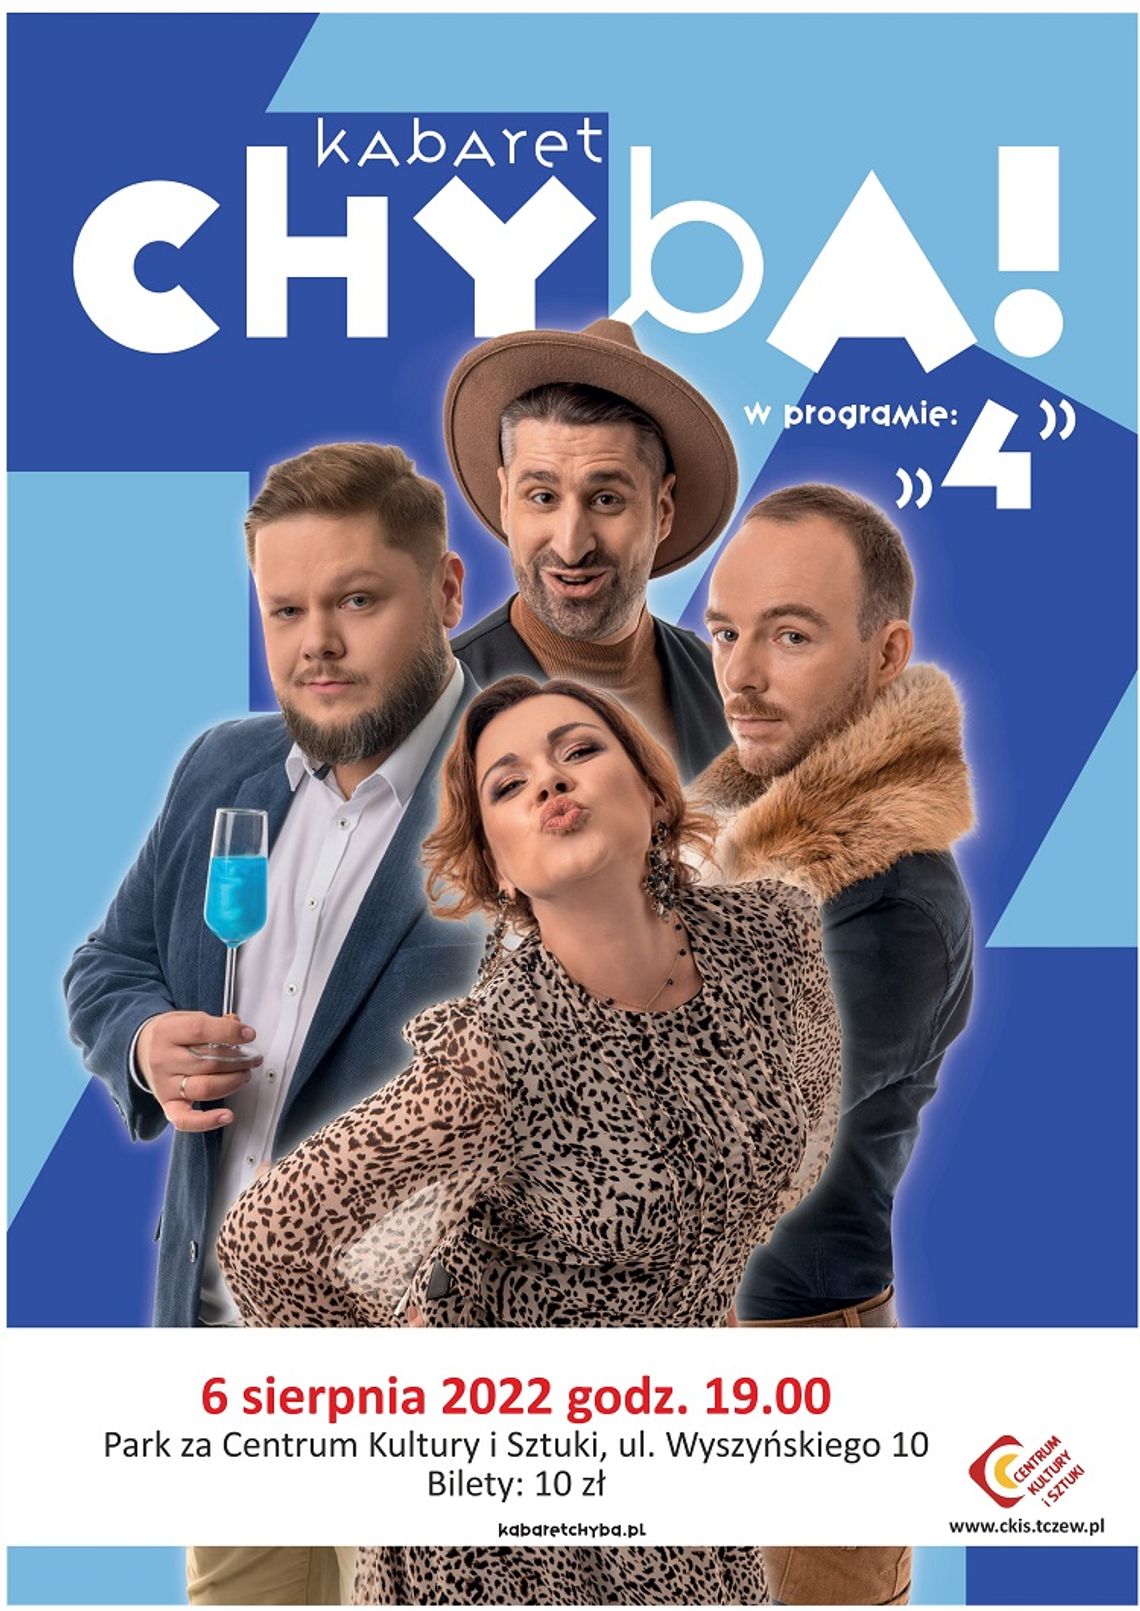 Kabaret CHYBA z programem „CZTERY” w CKiS Tczew.